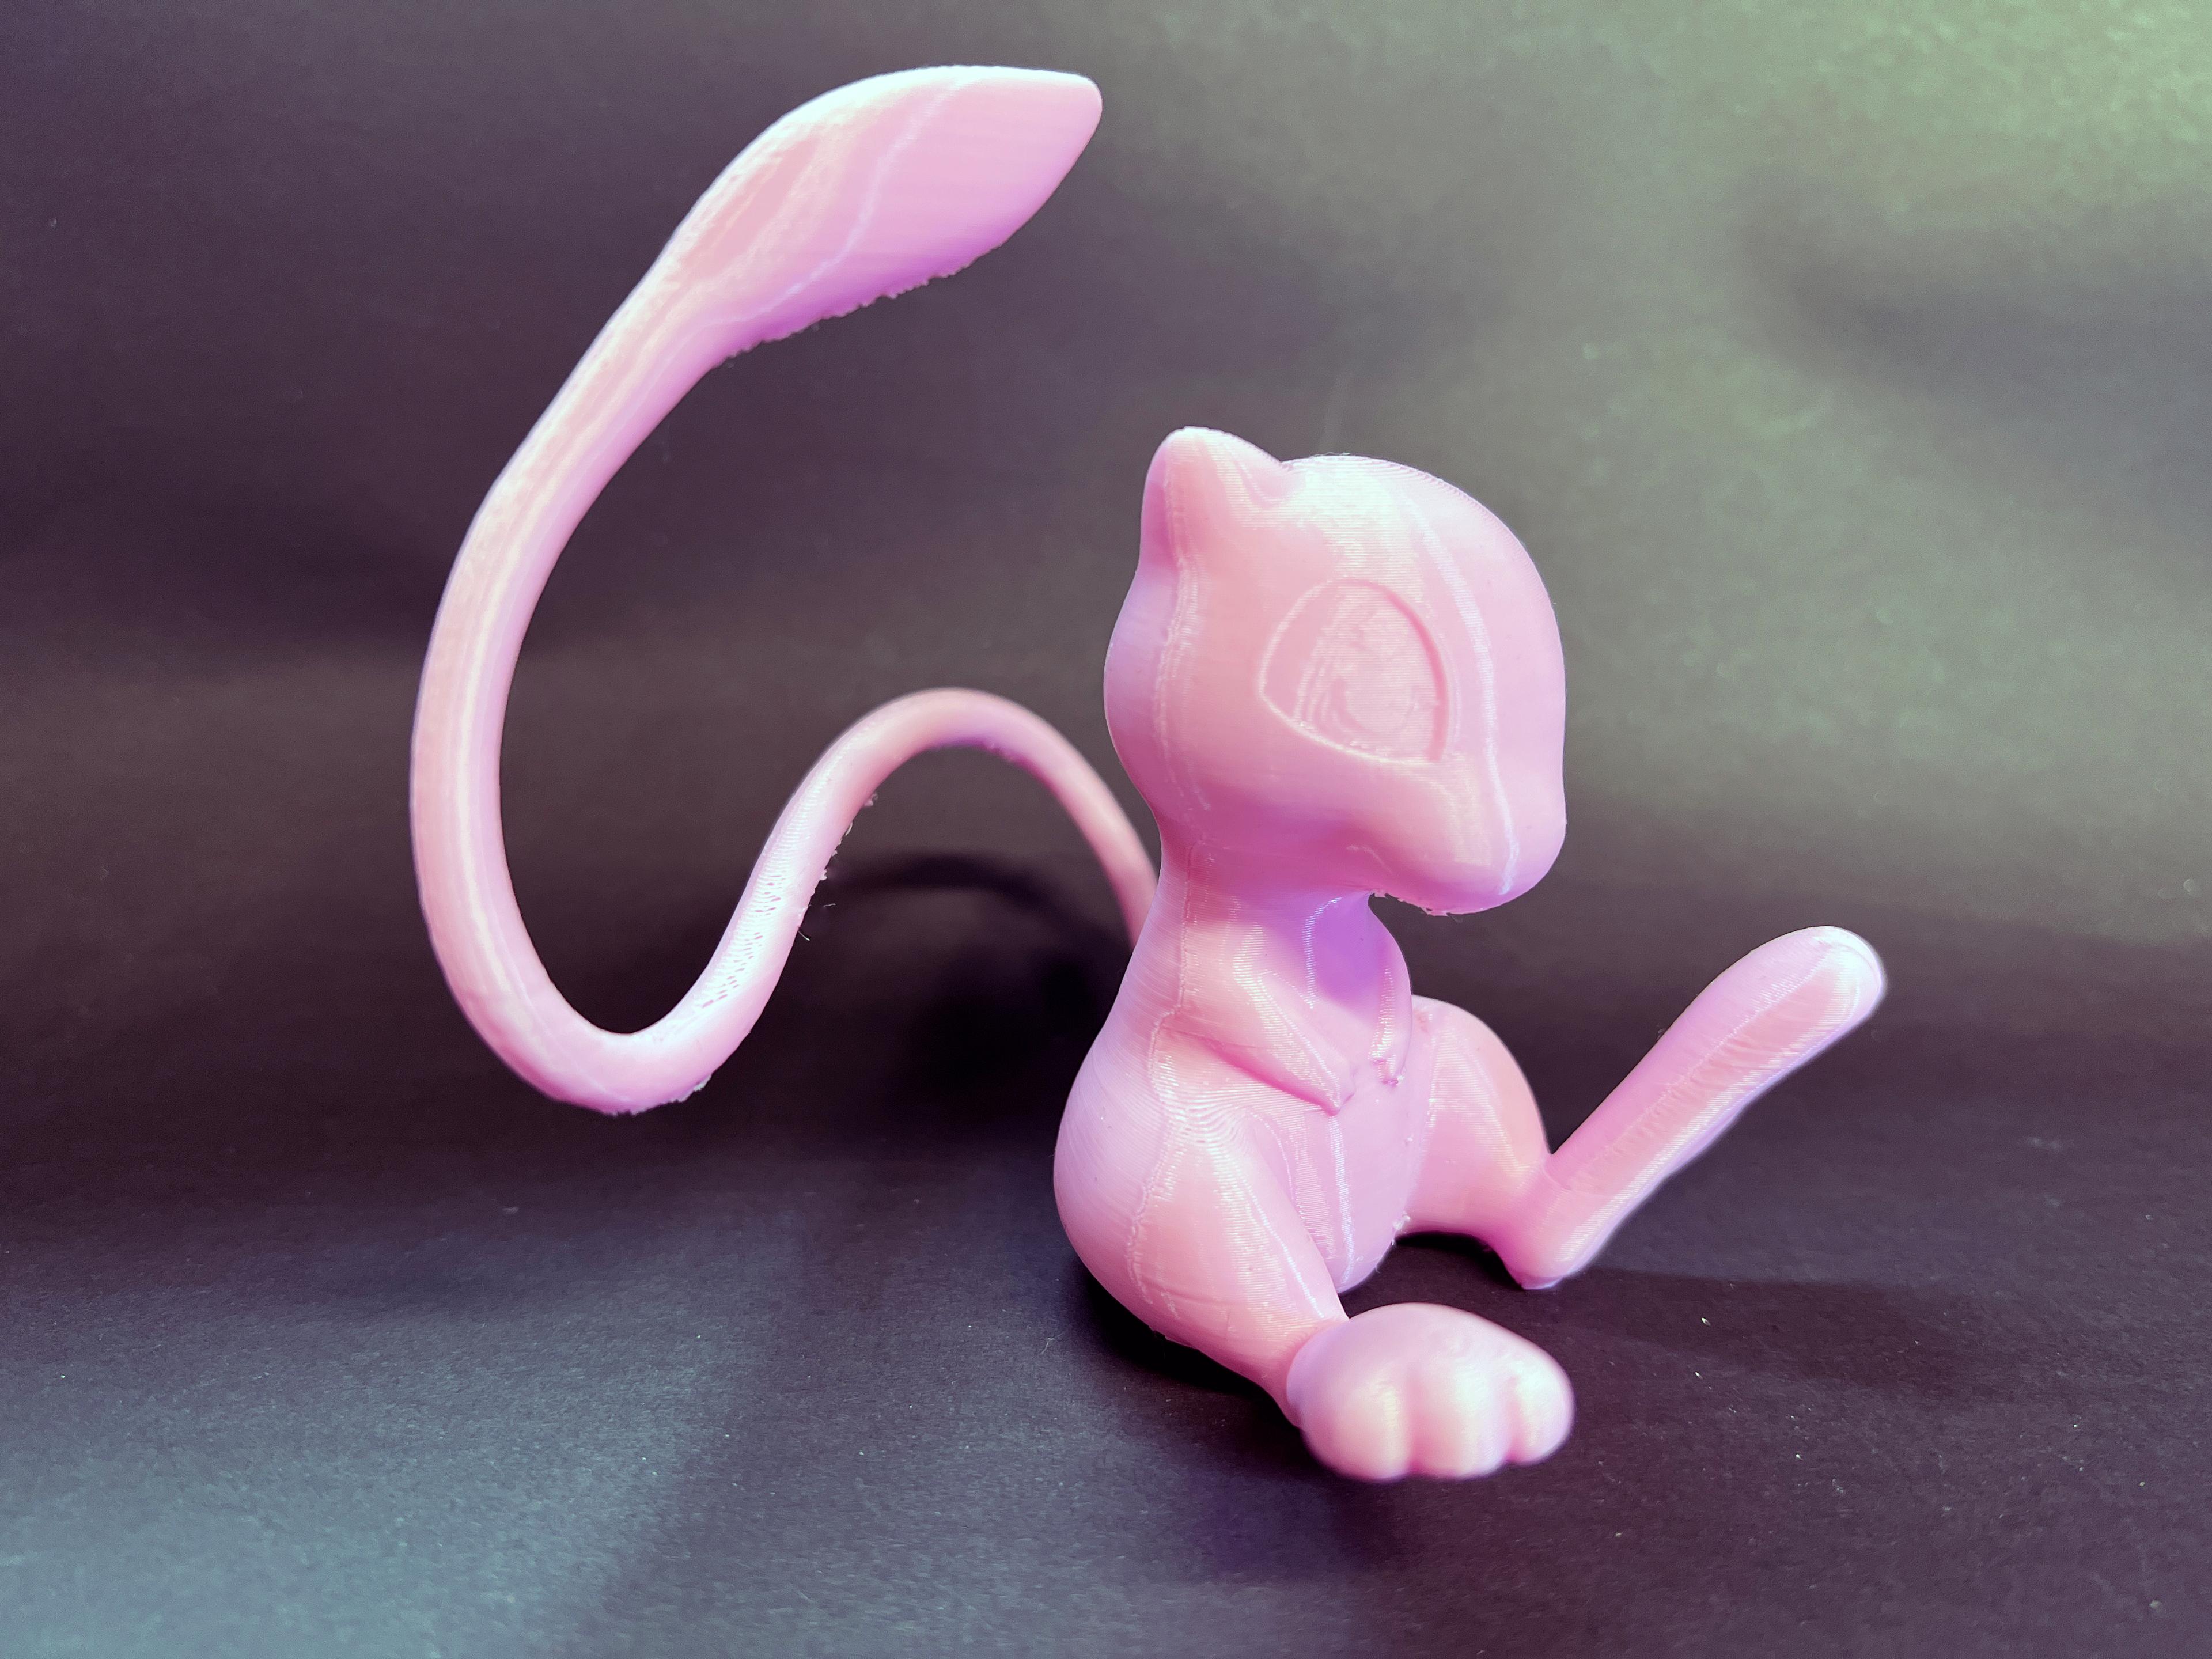 Mew(Pokemon) by Patrickart.hk, Download free STL model